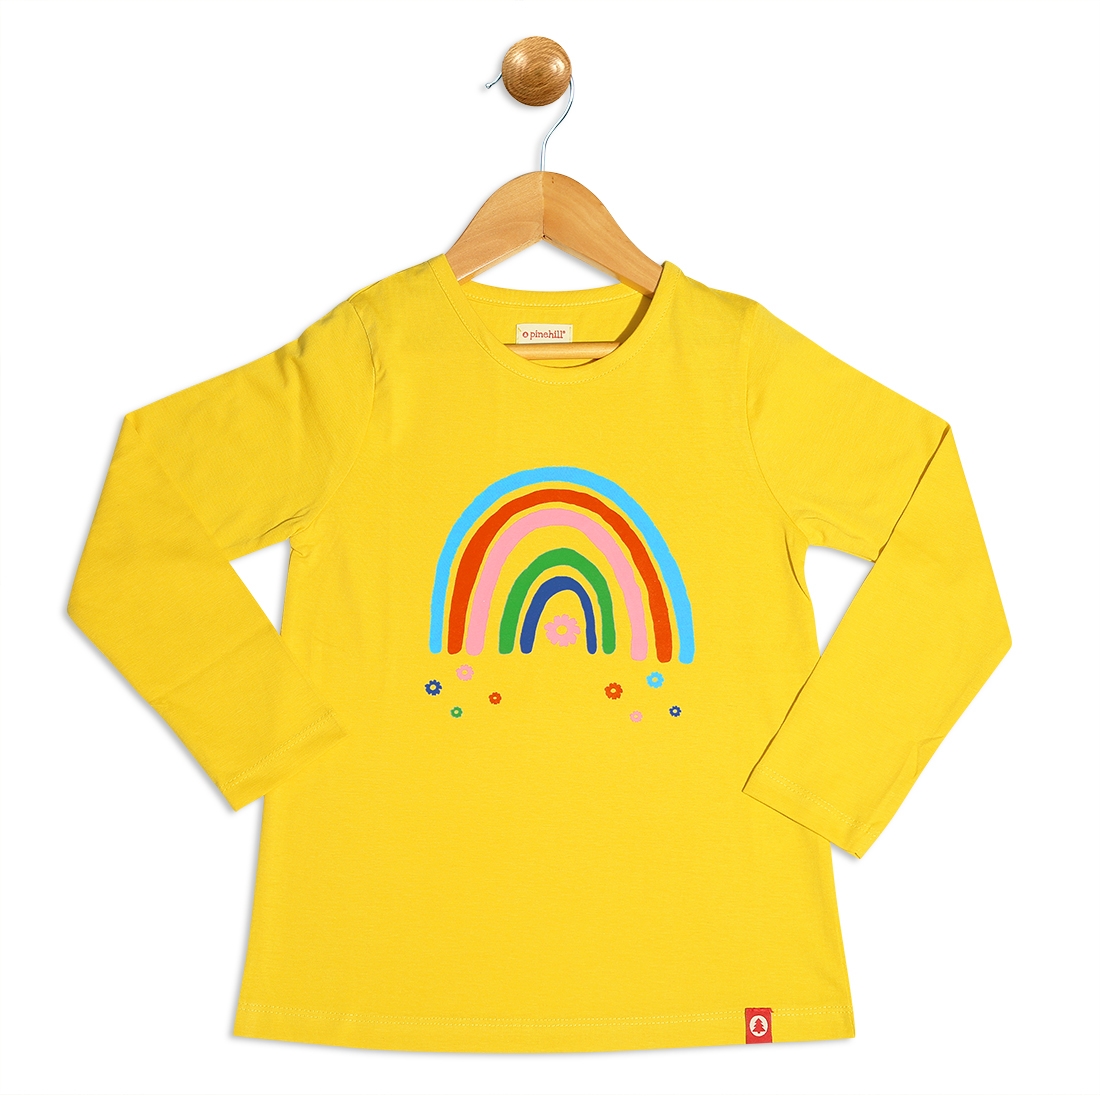 Pinehill | Pinehill Girls Rainbow Printed T-Shirt